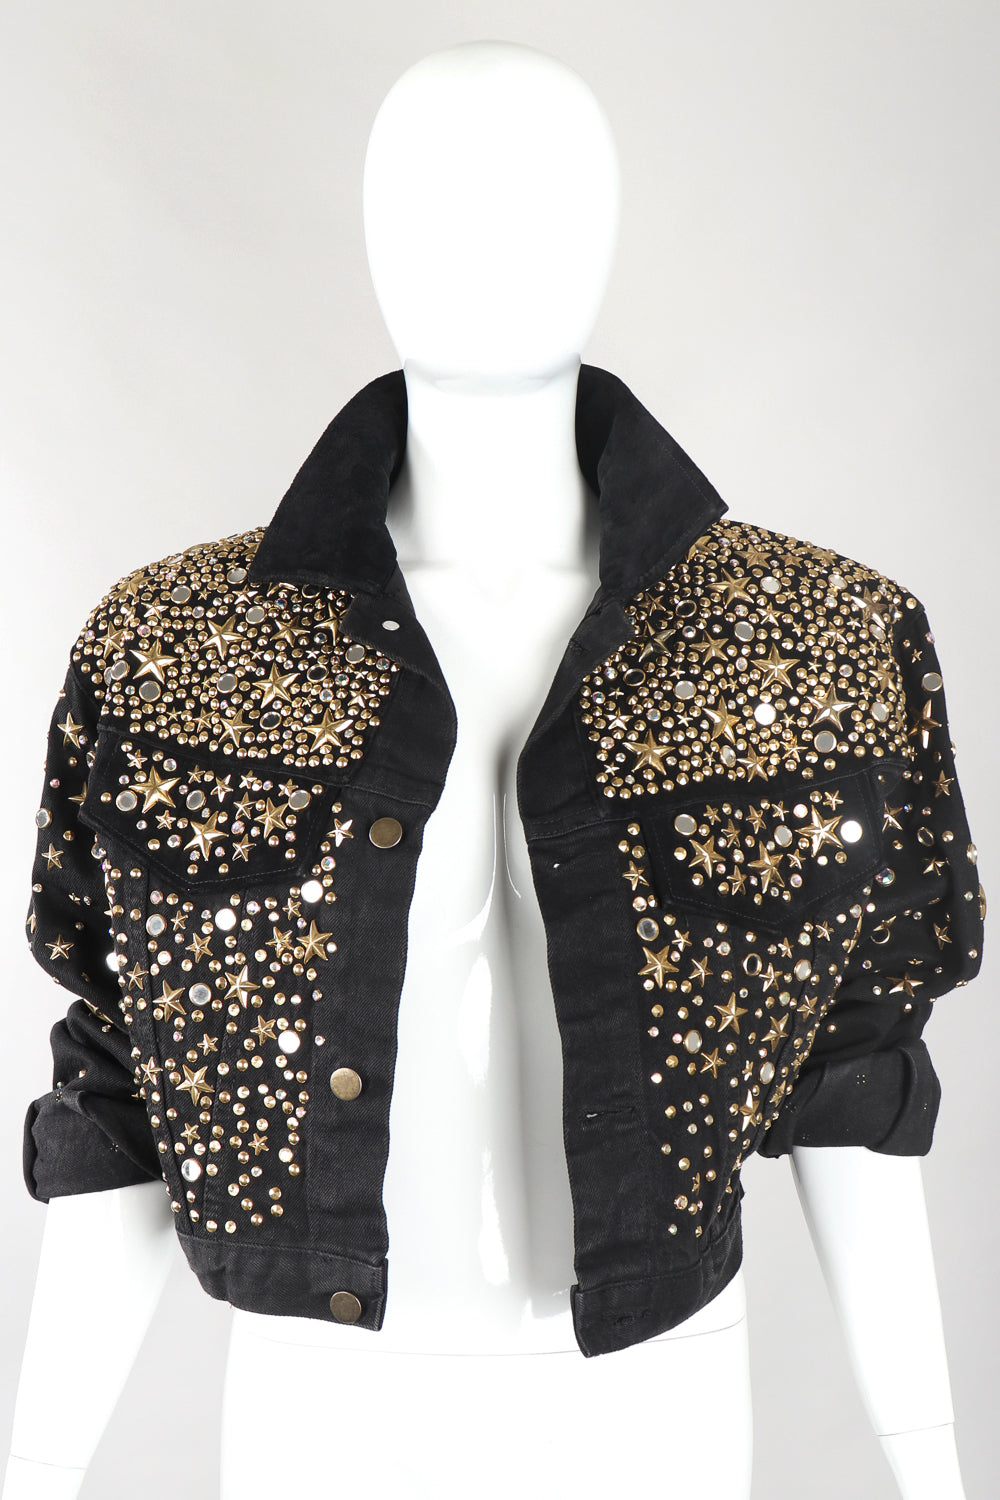 Recess Designer Consignment Vintage K.Baumann Embellished Studded Stardust Jean Jacket Los Angeles Resale